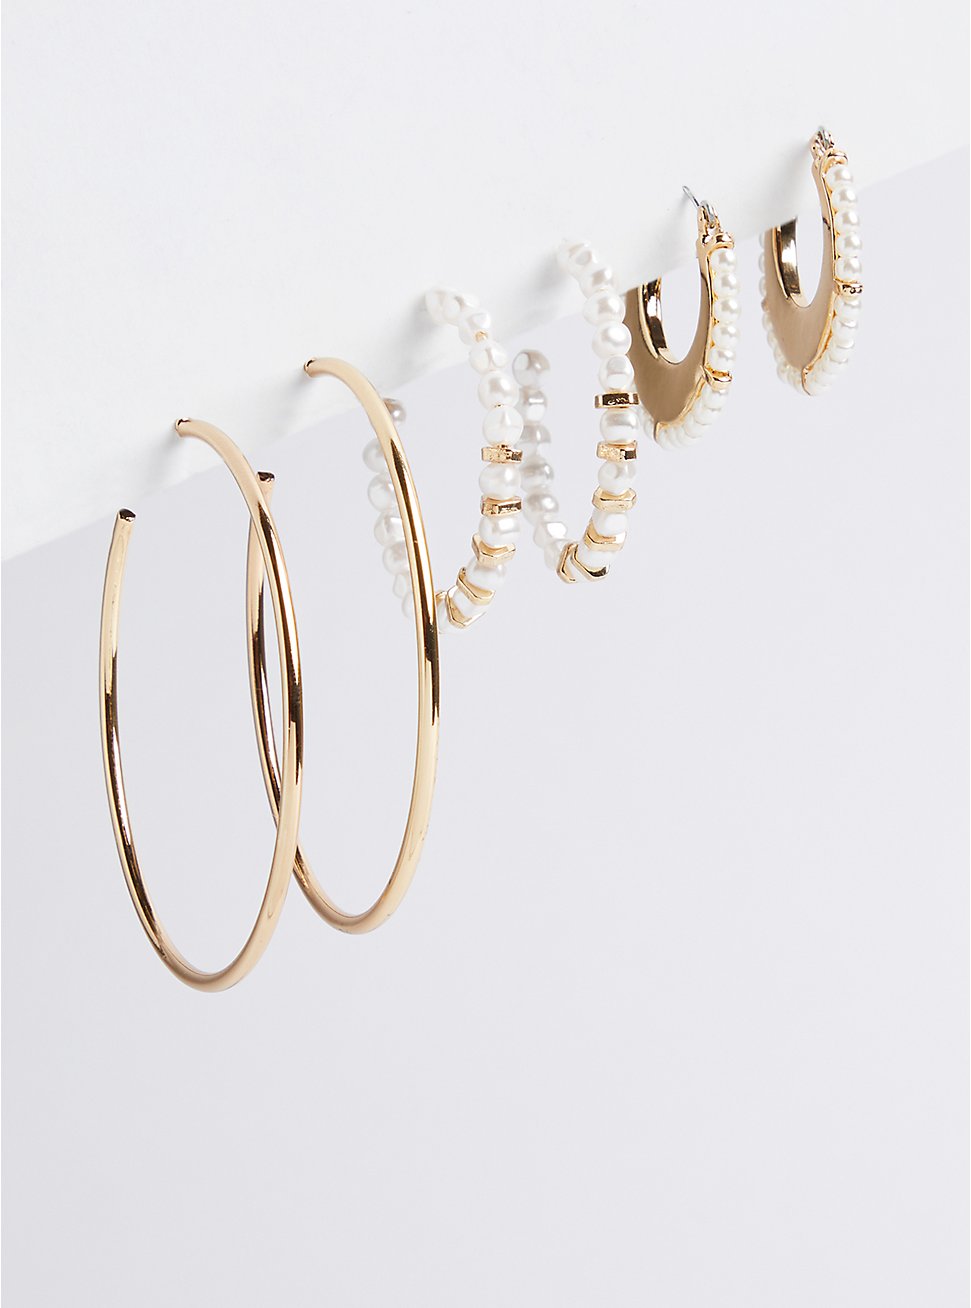 Pearl Hoop Earring Set of 3 - Gold Tone, , hi-res